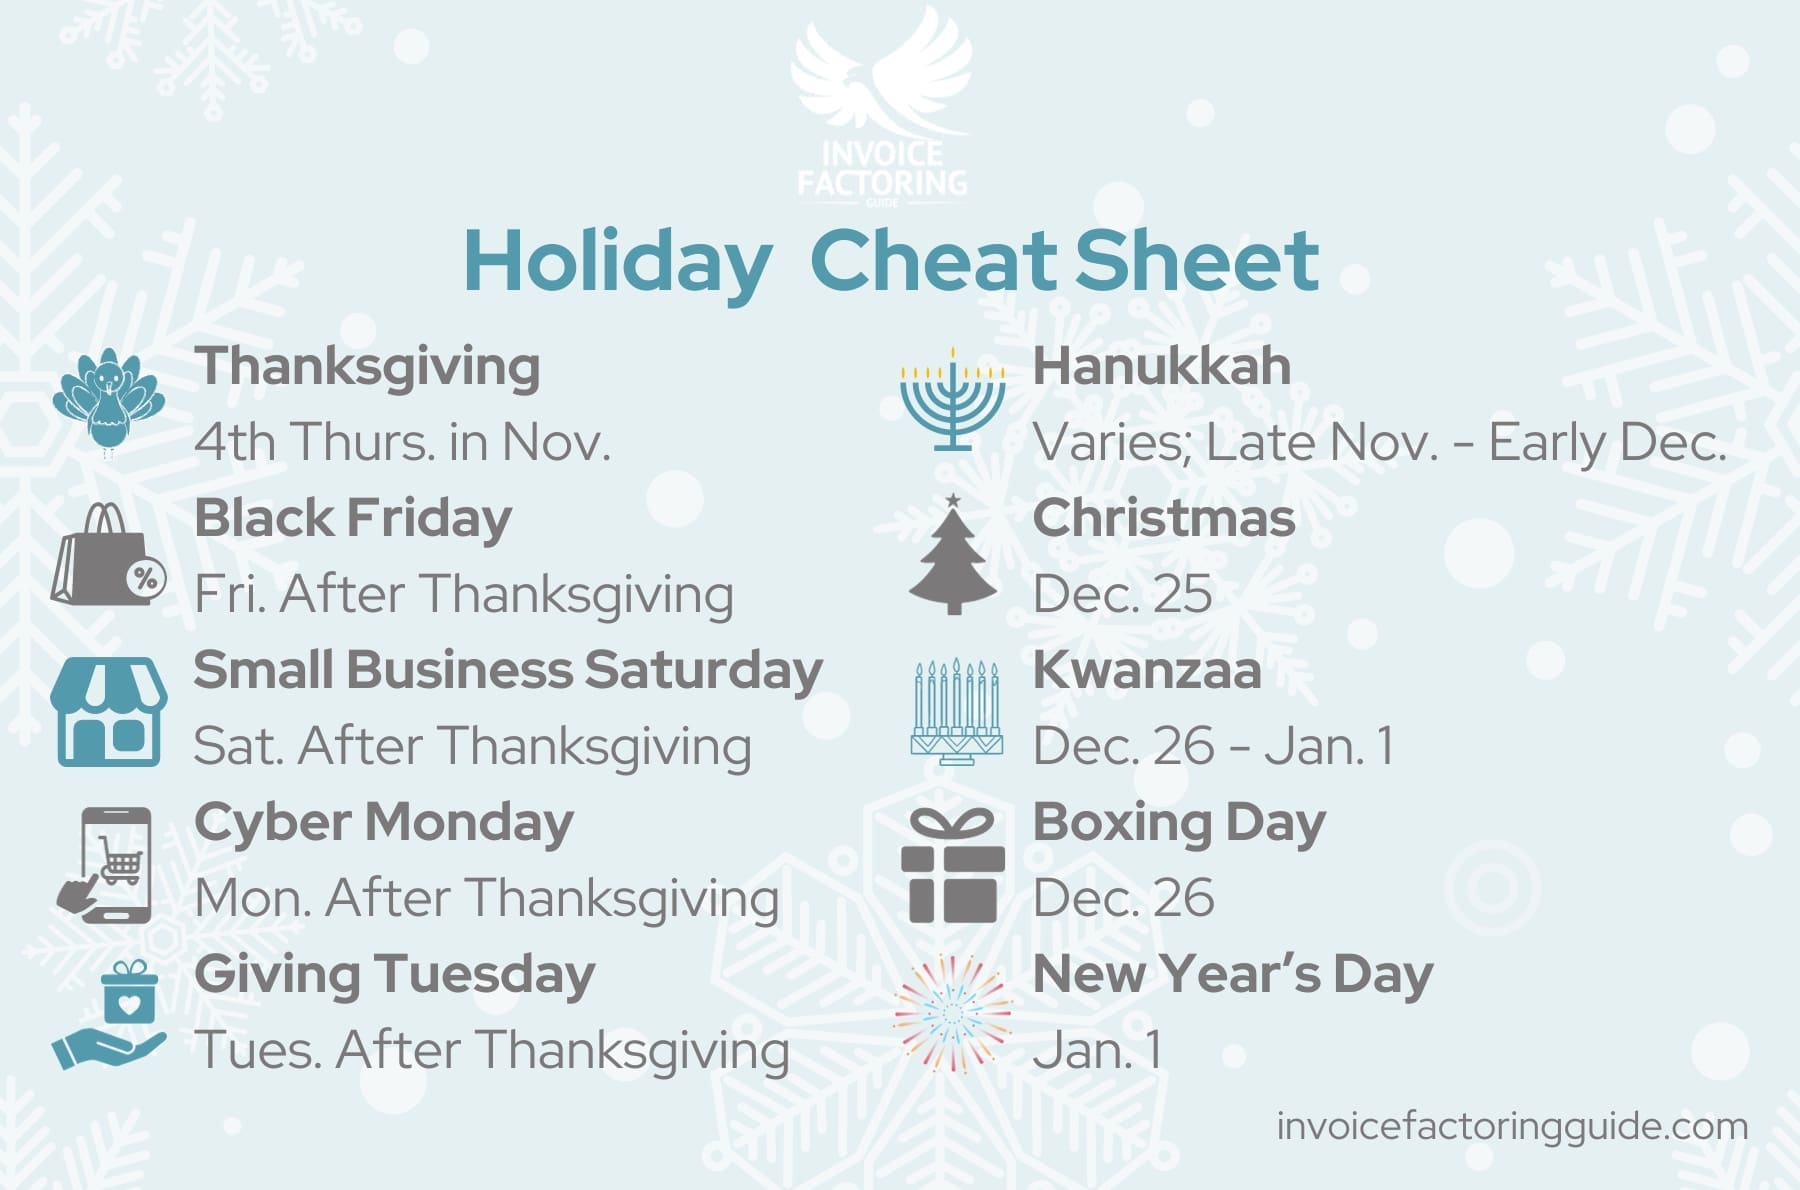 U.S. Holiday Cheat Sheet